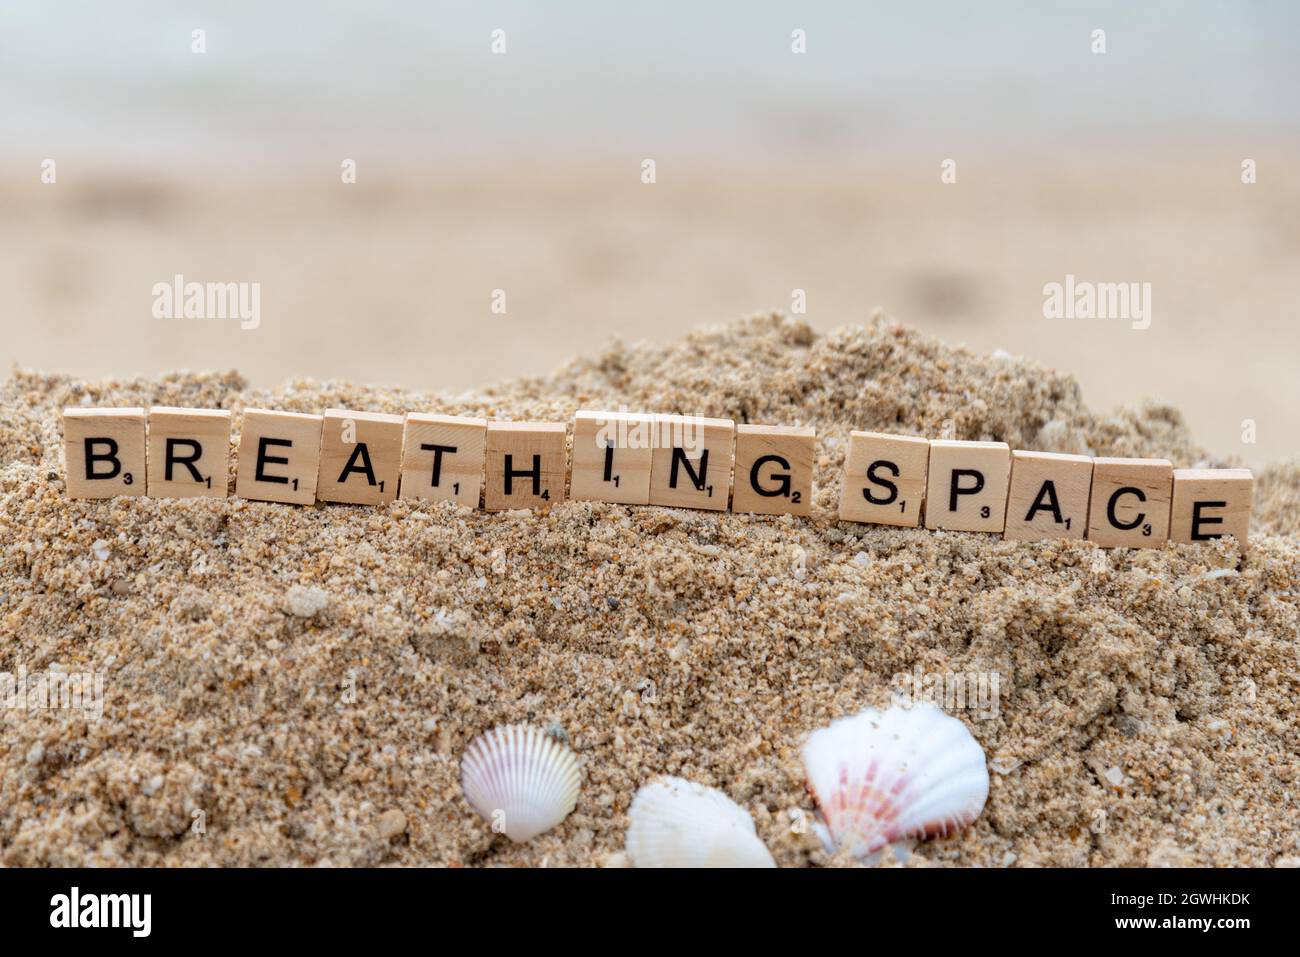 parola scrabble scritta sulla sabbia, spazio di respirazione Foto Stock